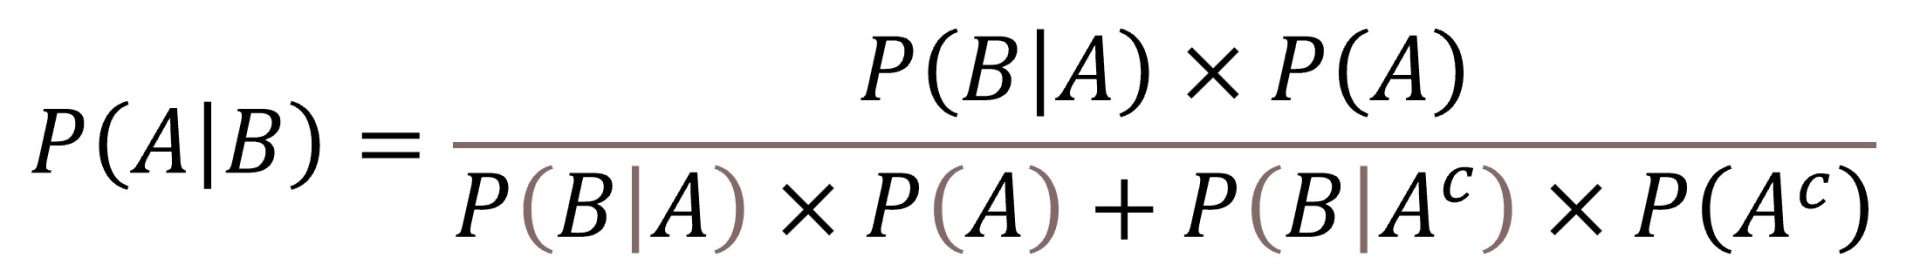 Bayes' theorem